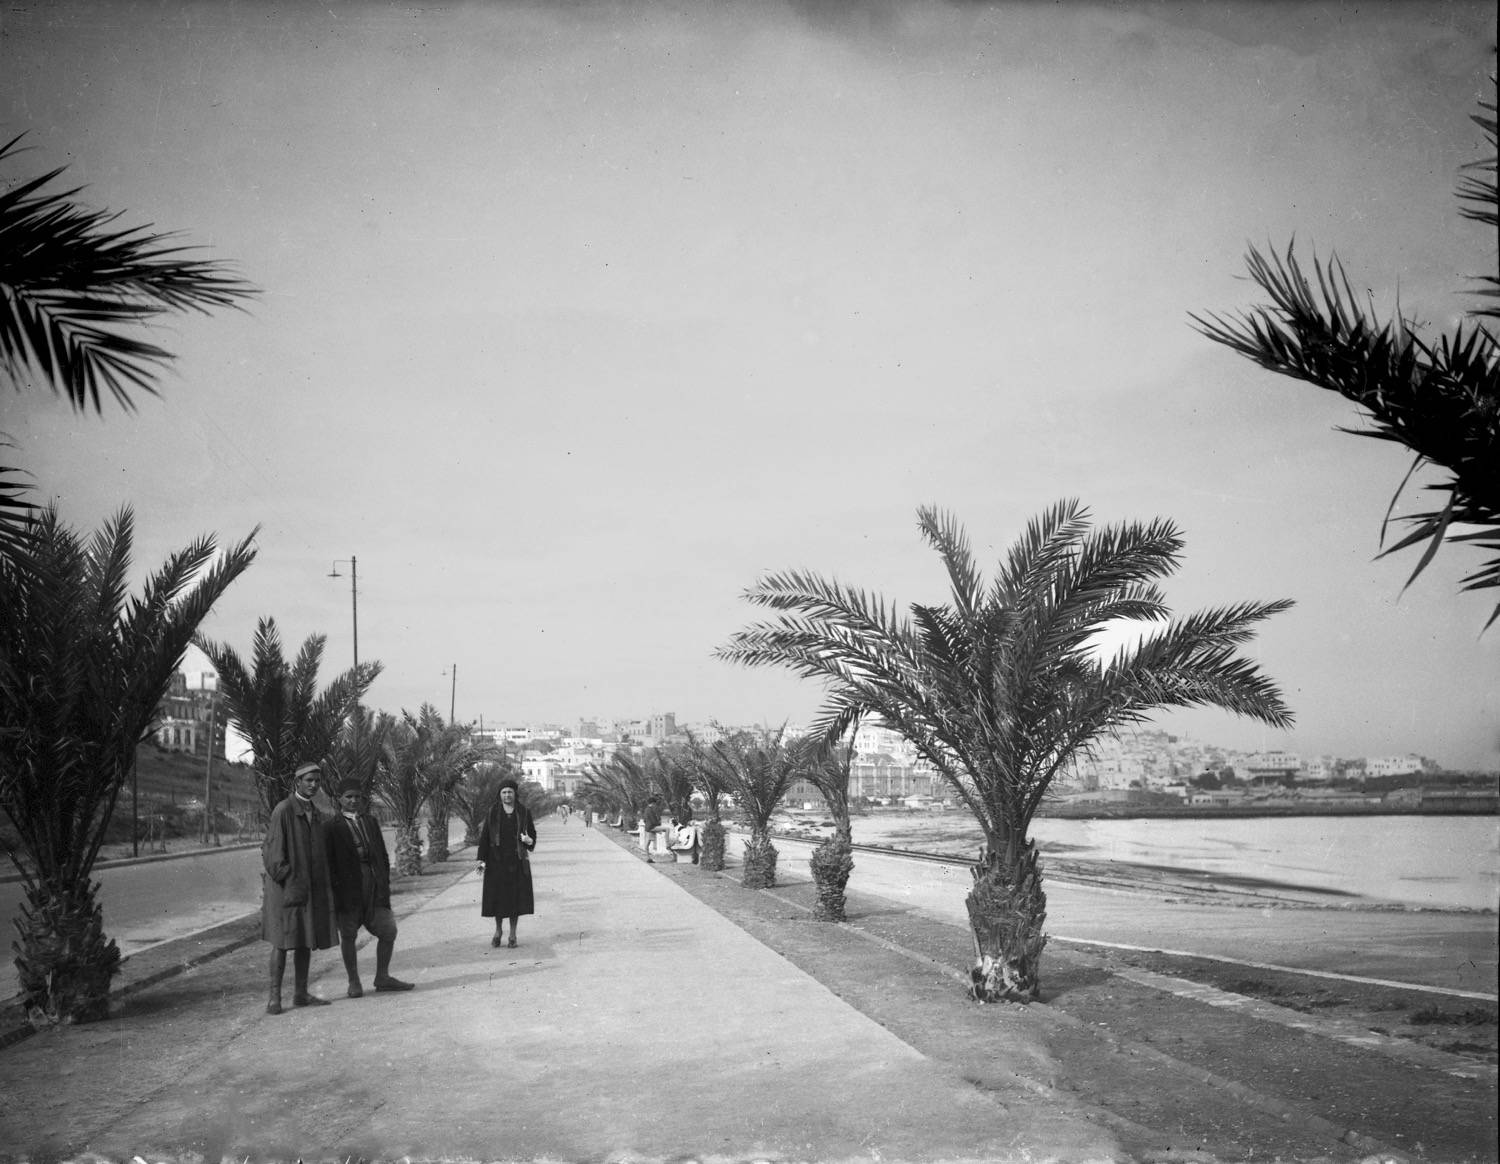 Avenue Mohammed VI - View down the Avene Mohamed VI